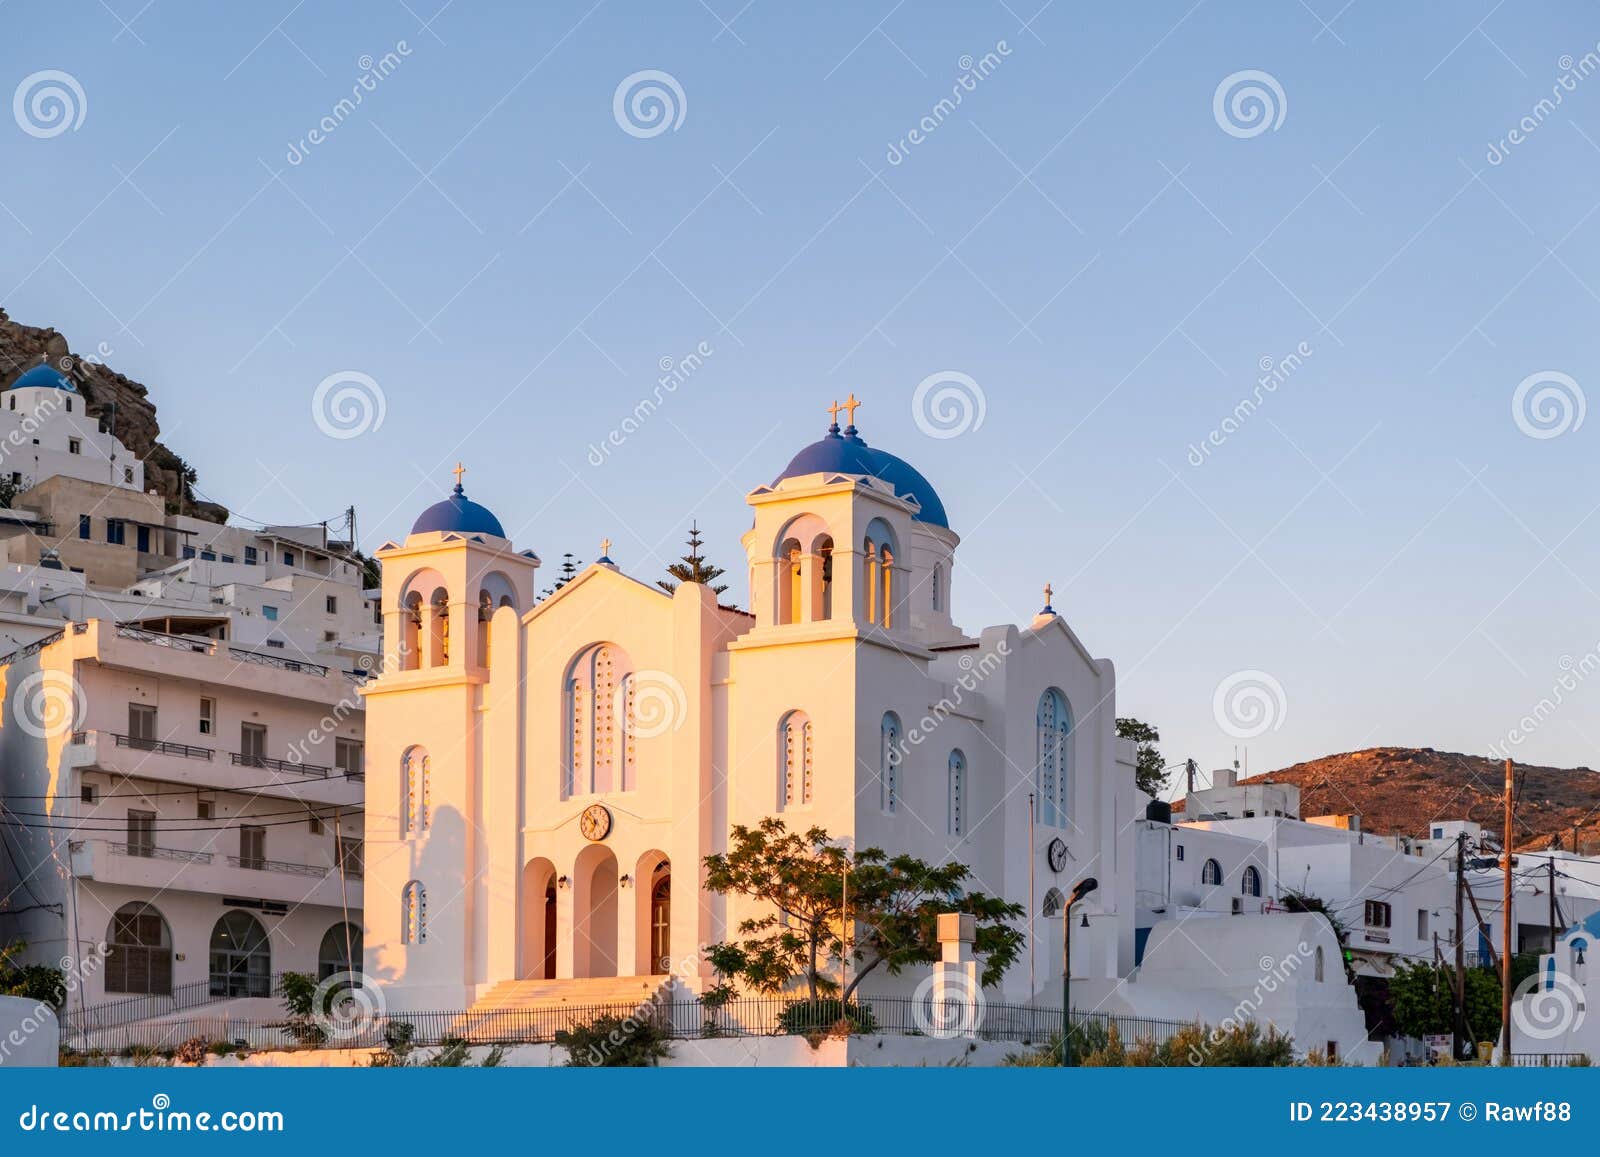 church of evangelismos cathedral at ios, nios island, cyclades, greece